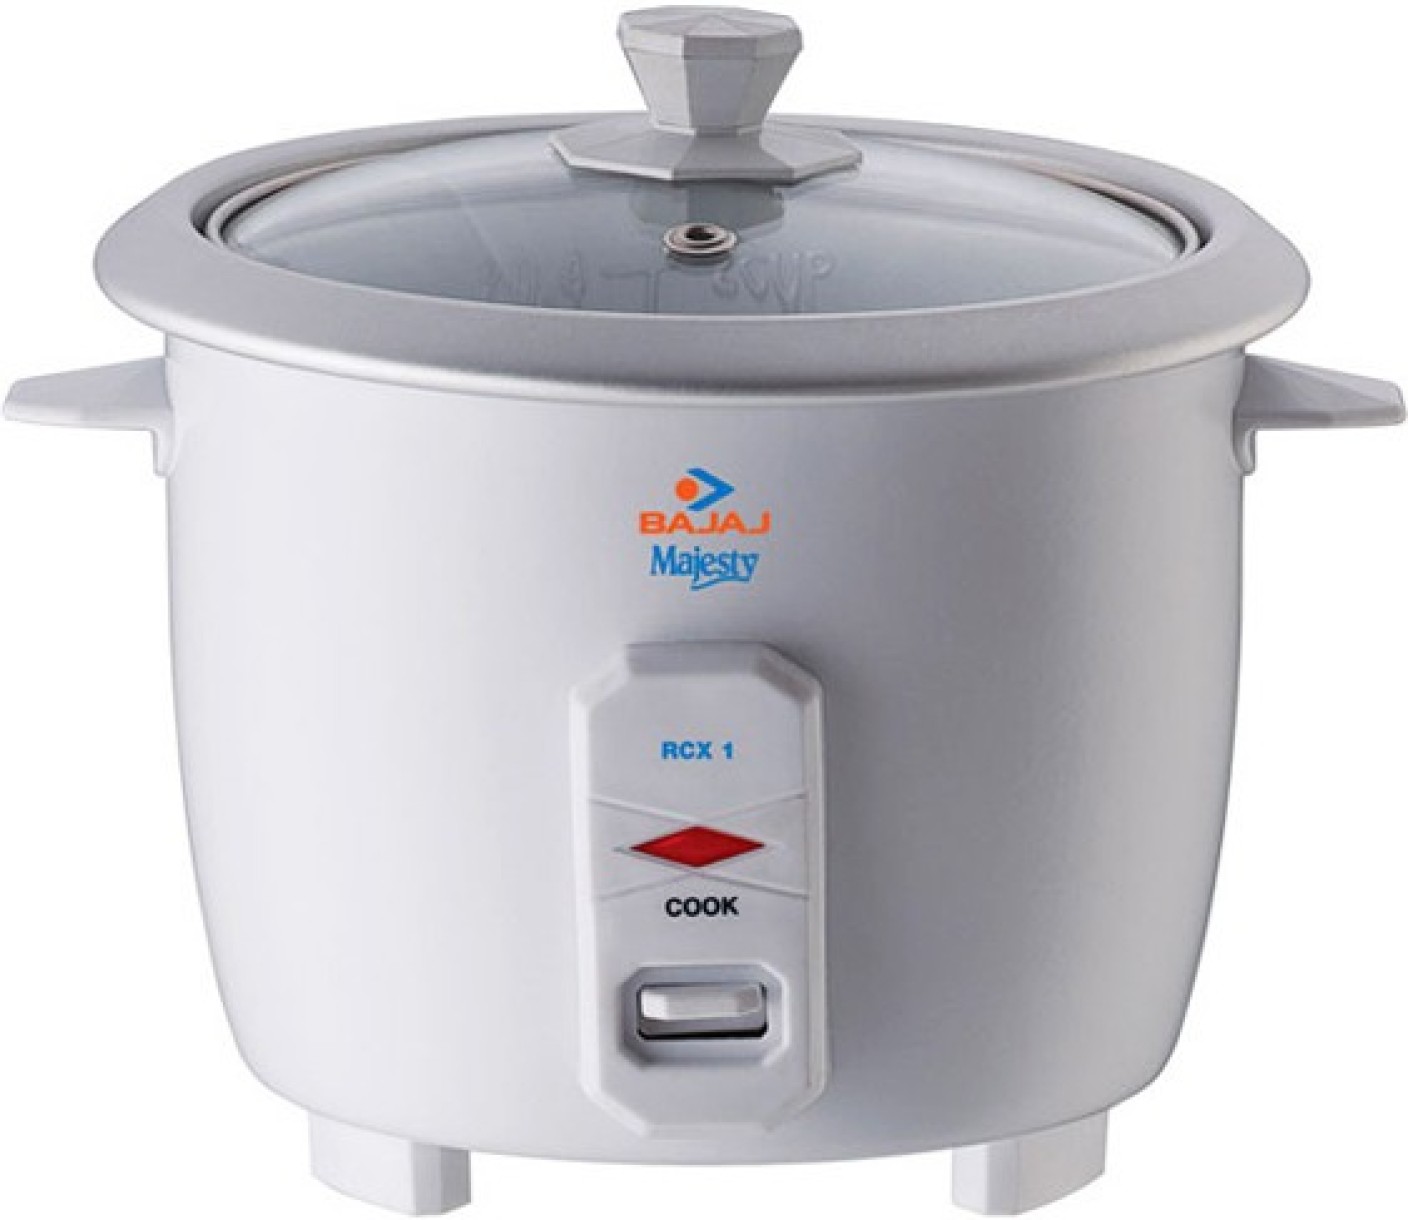 Bajaj RCX 1 mini Electric Rice Cooker Price in India - Buy Bajaj RCX 1 ...